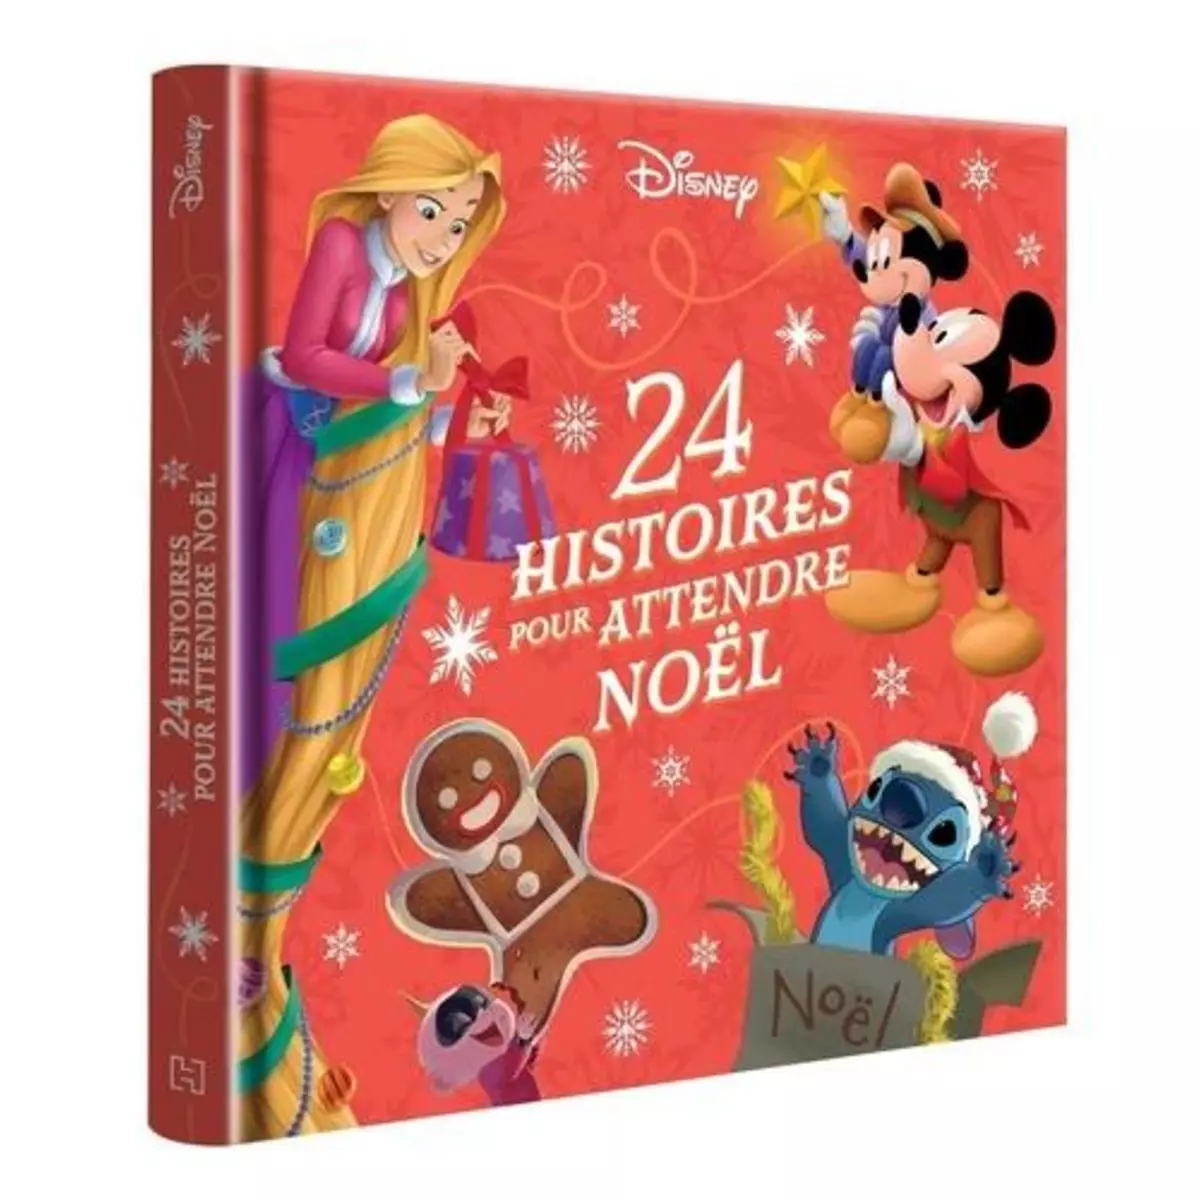  24 HISTOIRES POUR ATTENDRE NOEL, Disney